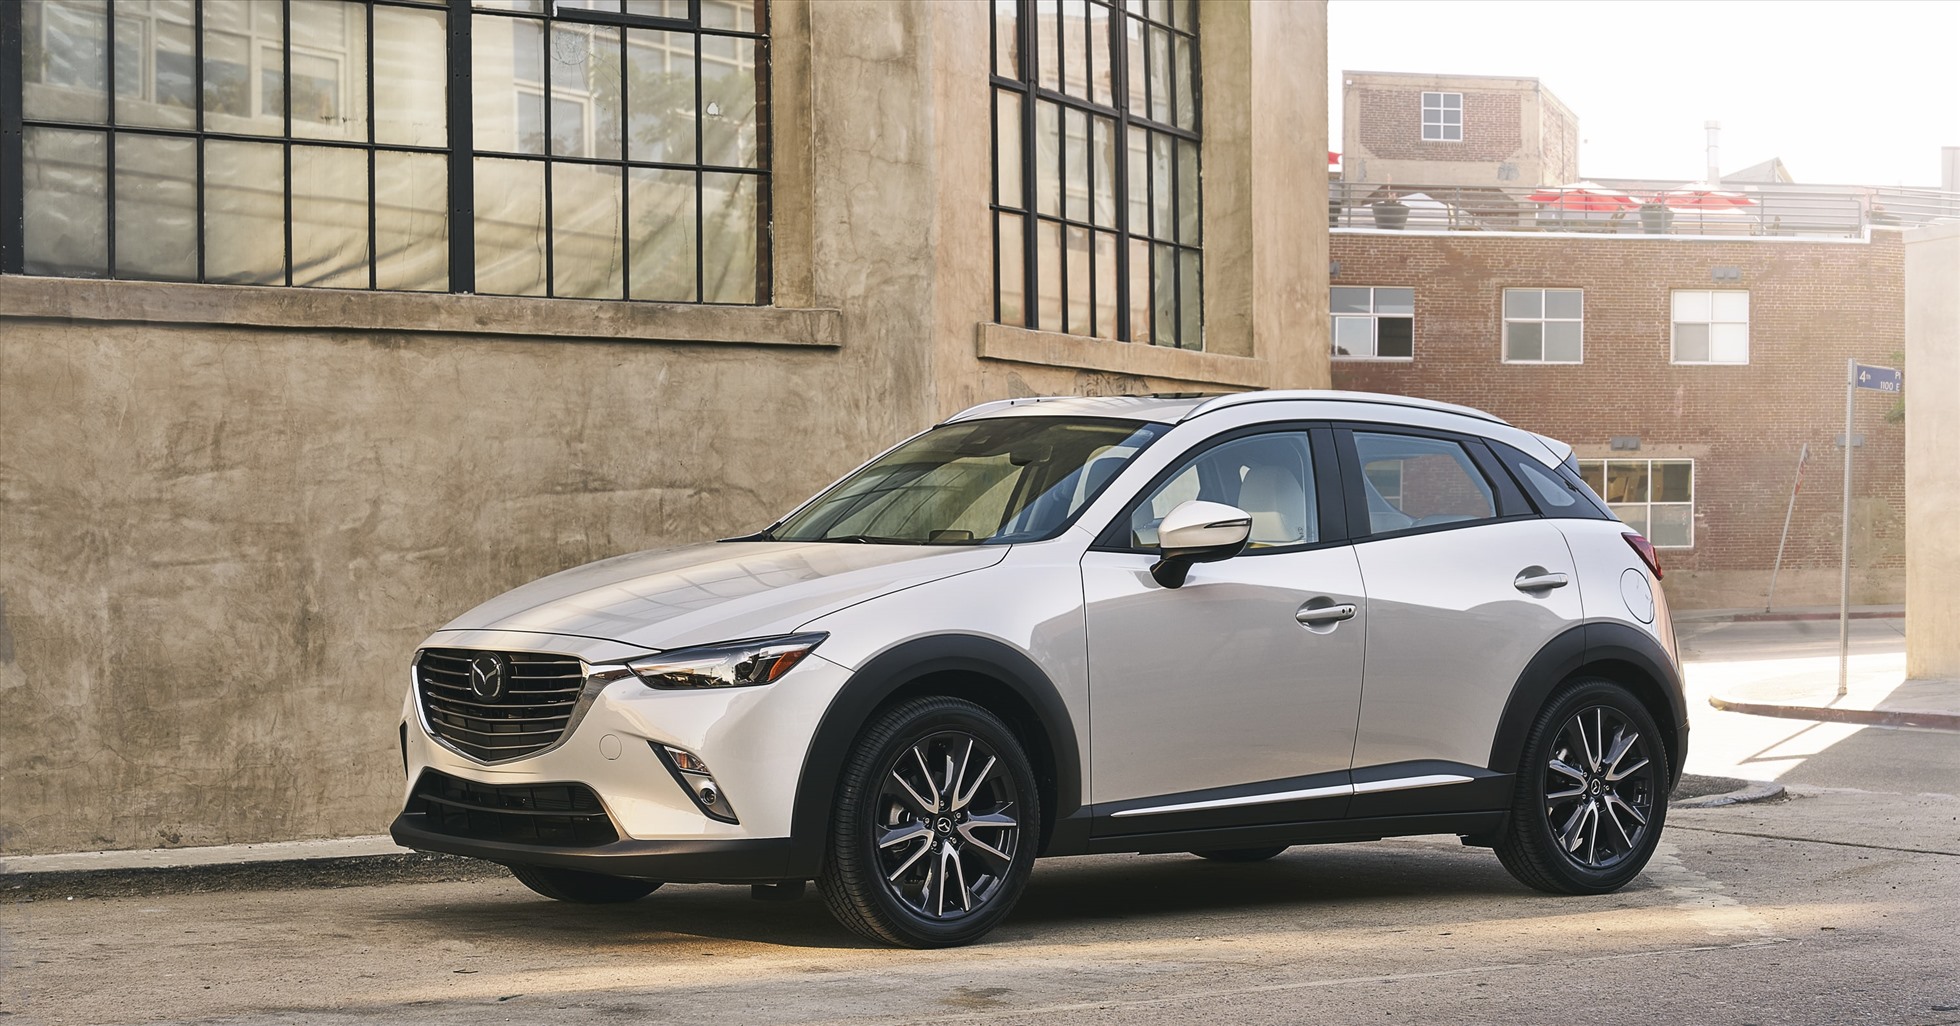 Mazda giảm giá mạnh cho nhiều dòng xe gầm cao. Ảnh: Mazda.